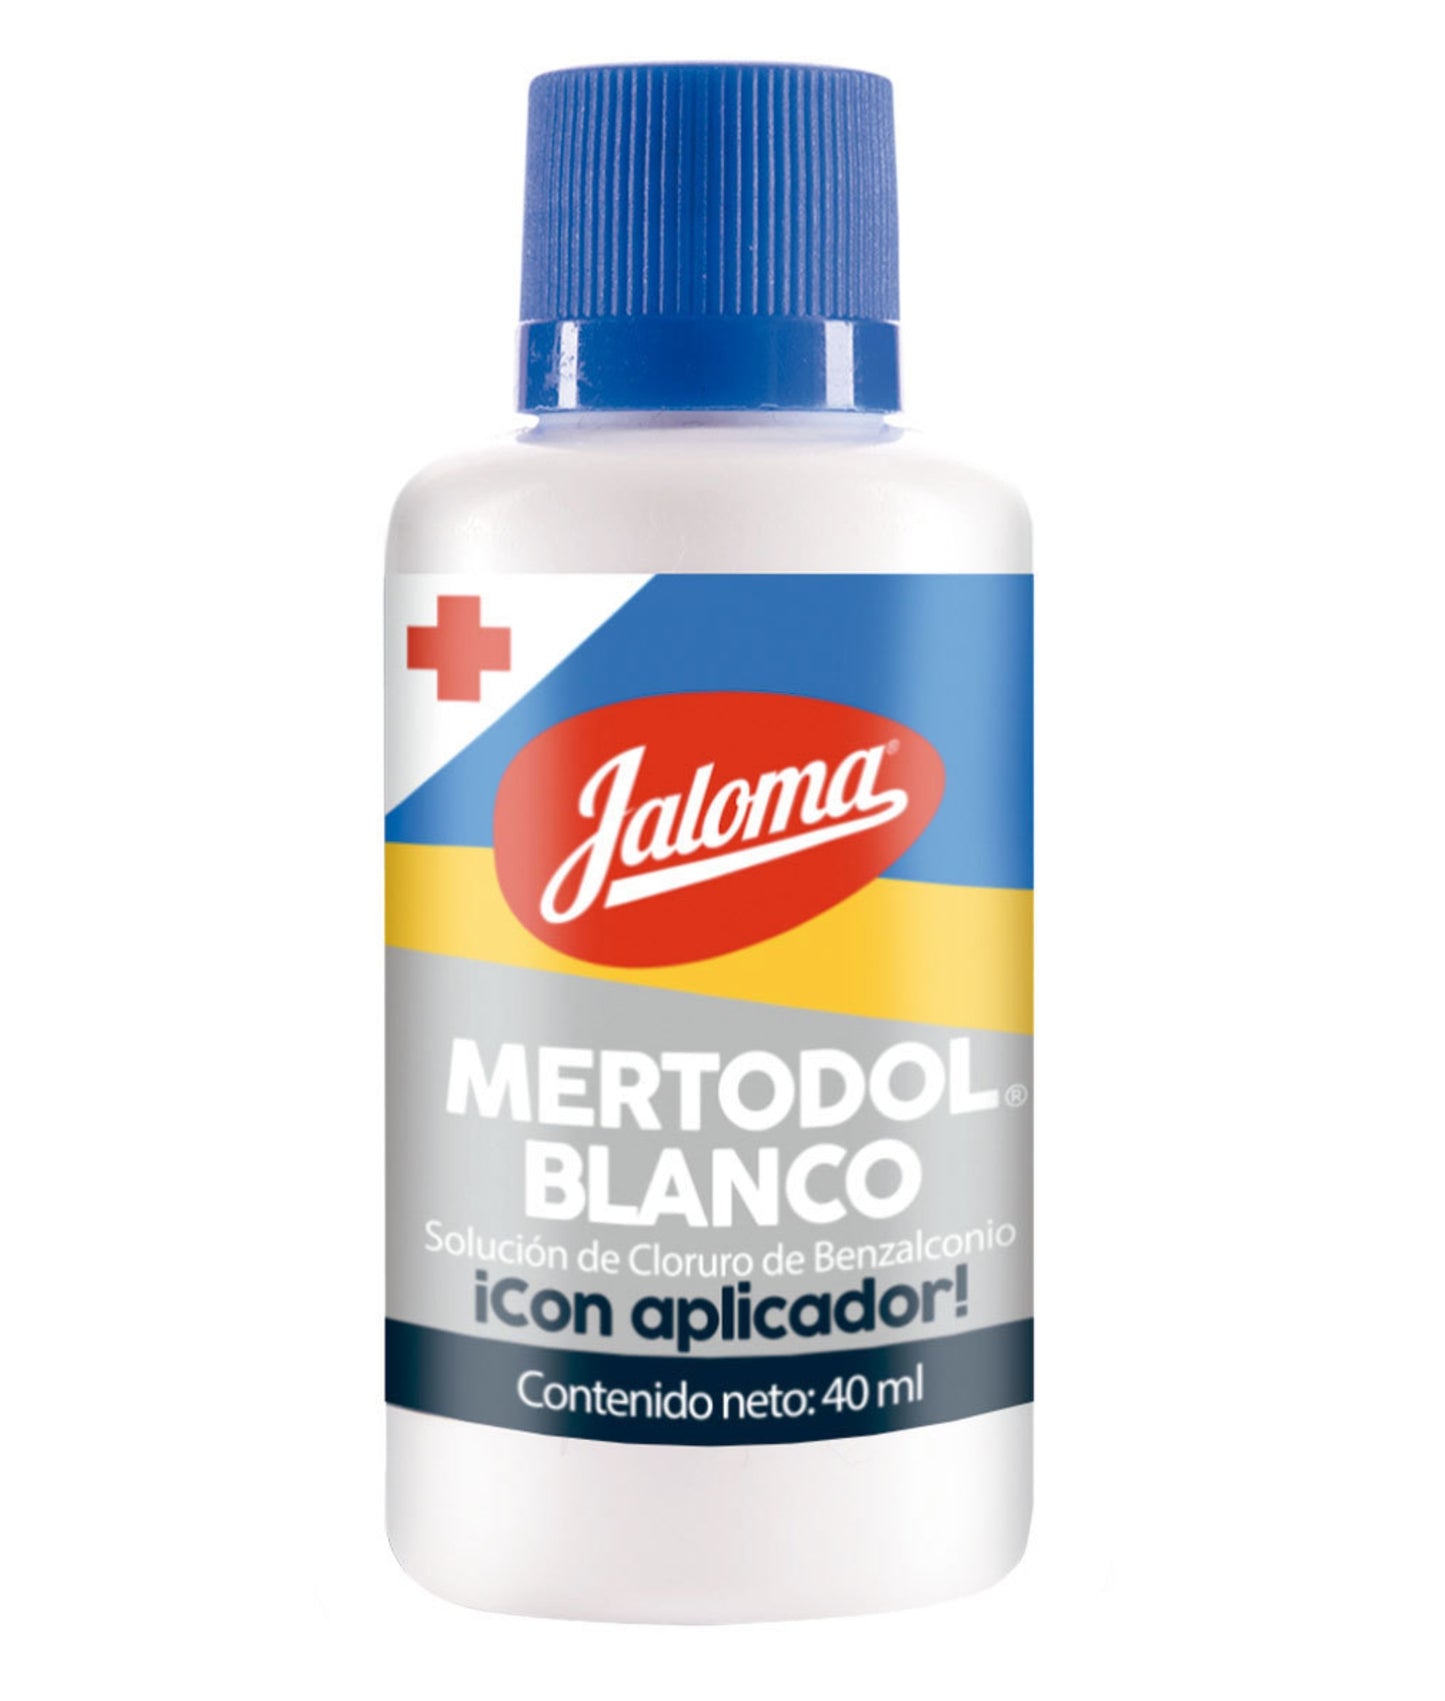 Mertodol Blanco Frasco con aplicador 40 ml Jaloma